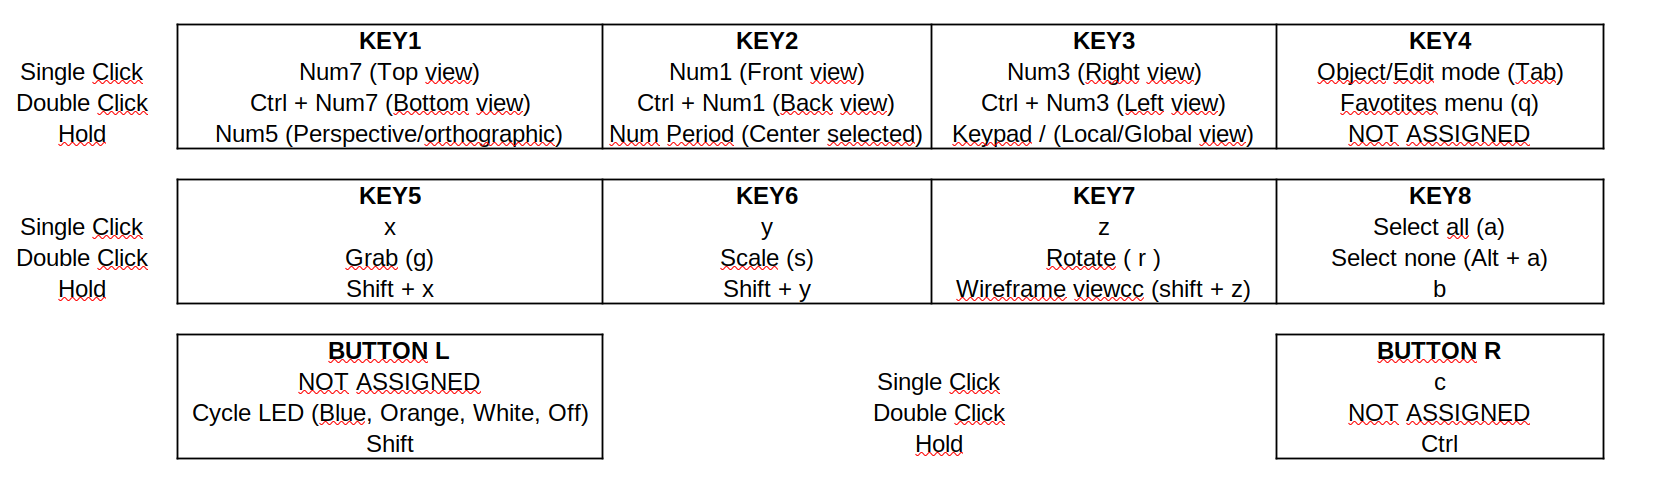 Blender keys.png